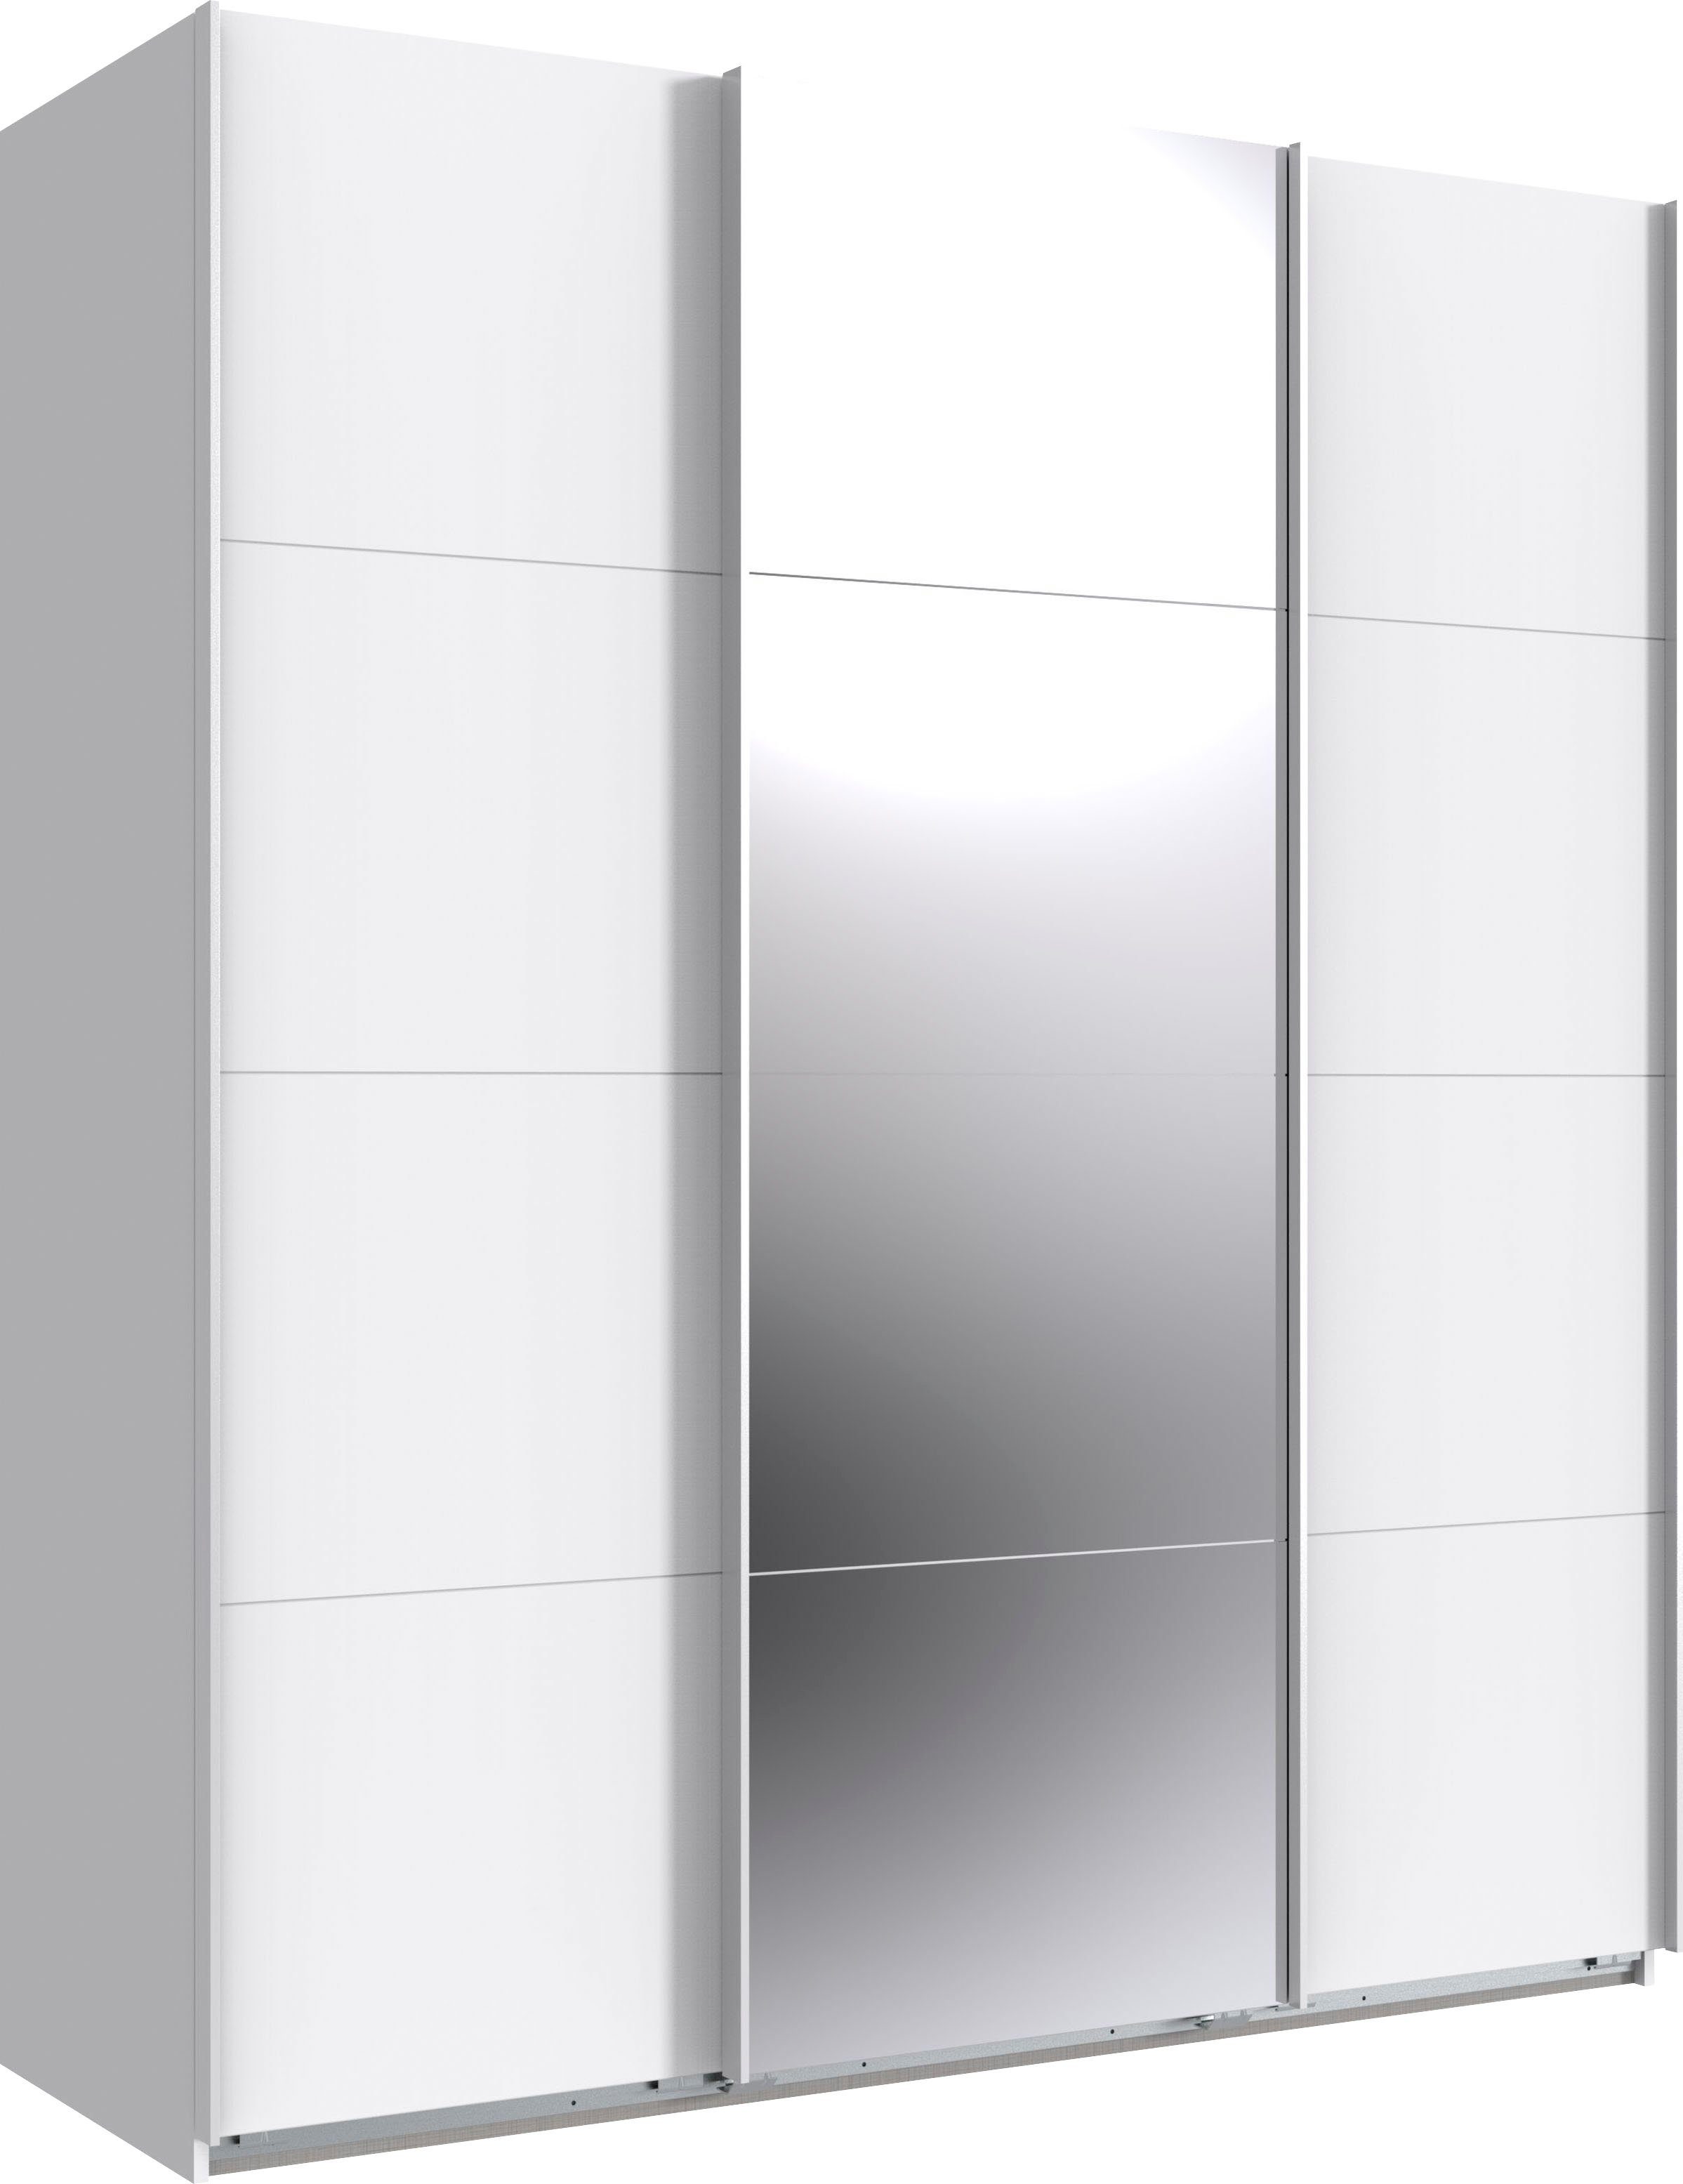 Wimex Schwebetürenschrank Norderstedt INKLUSIVE 2 Stoffboxen und 2 zusätzliche Einlegeböden Weiß/ Spiegel | Weiß